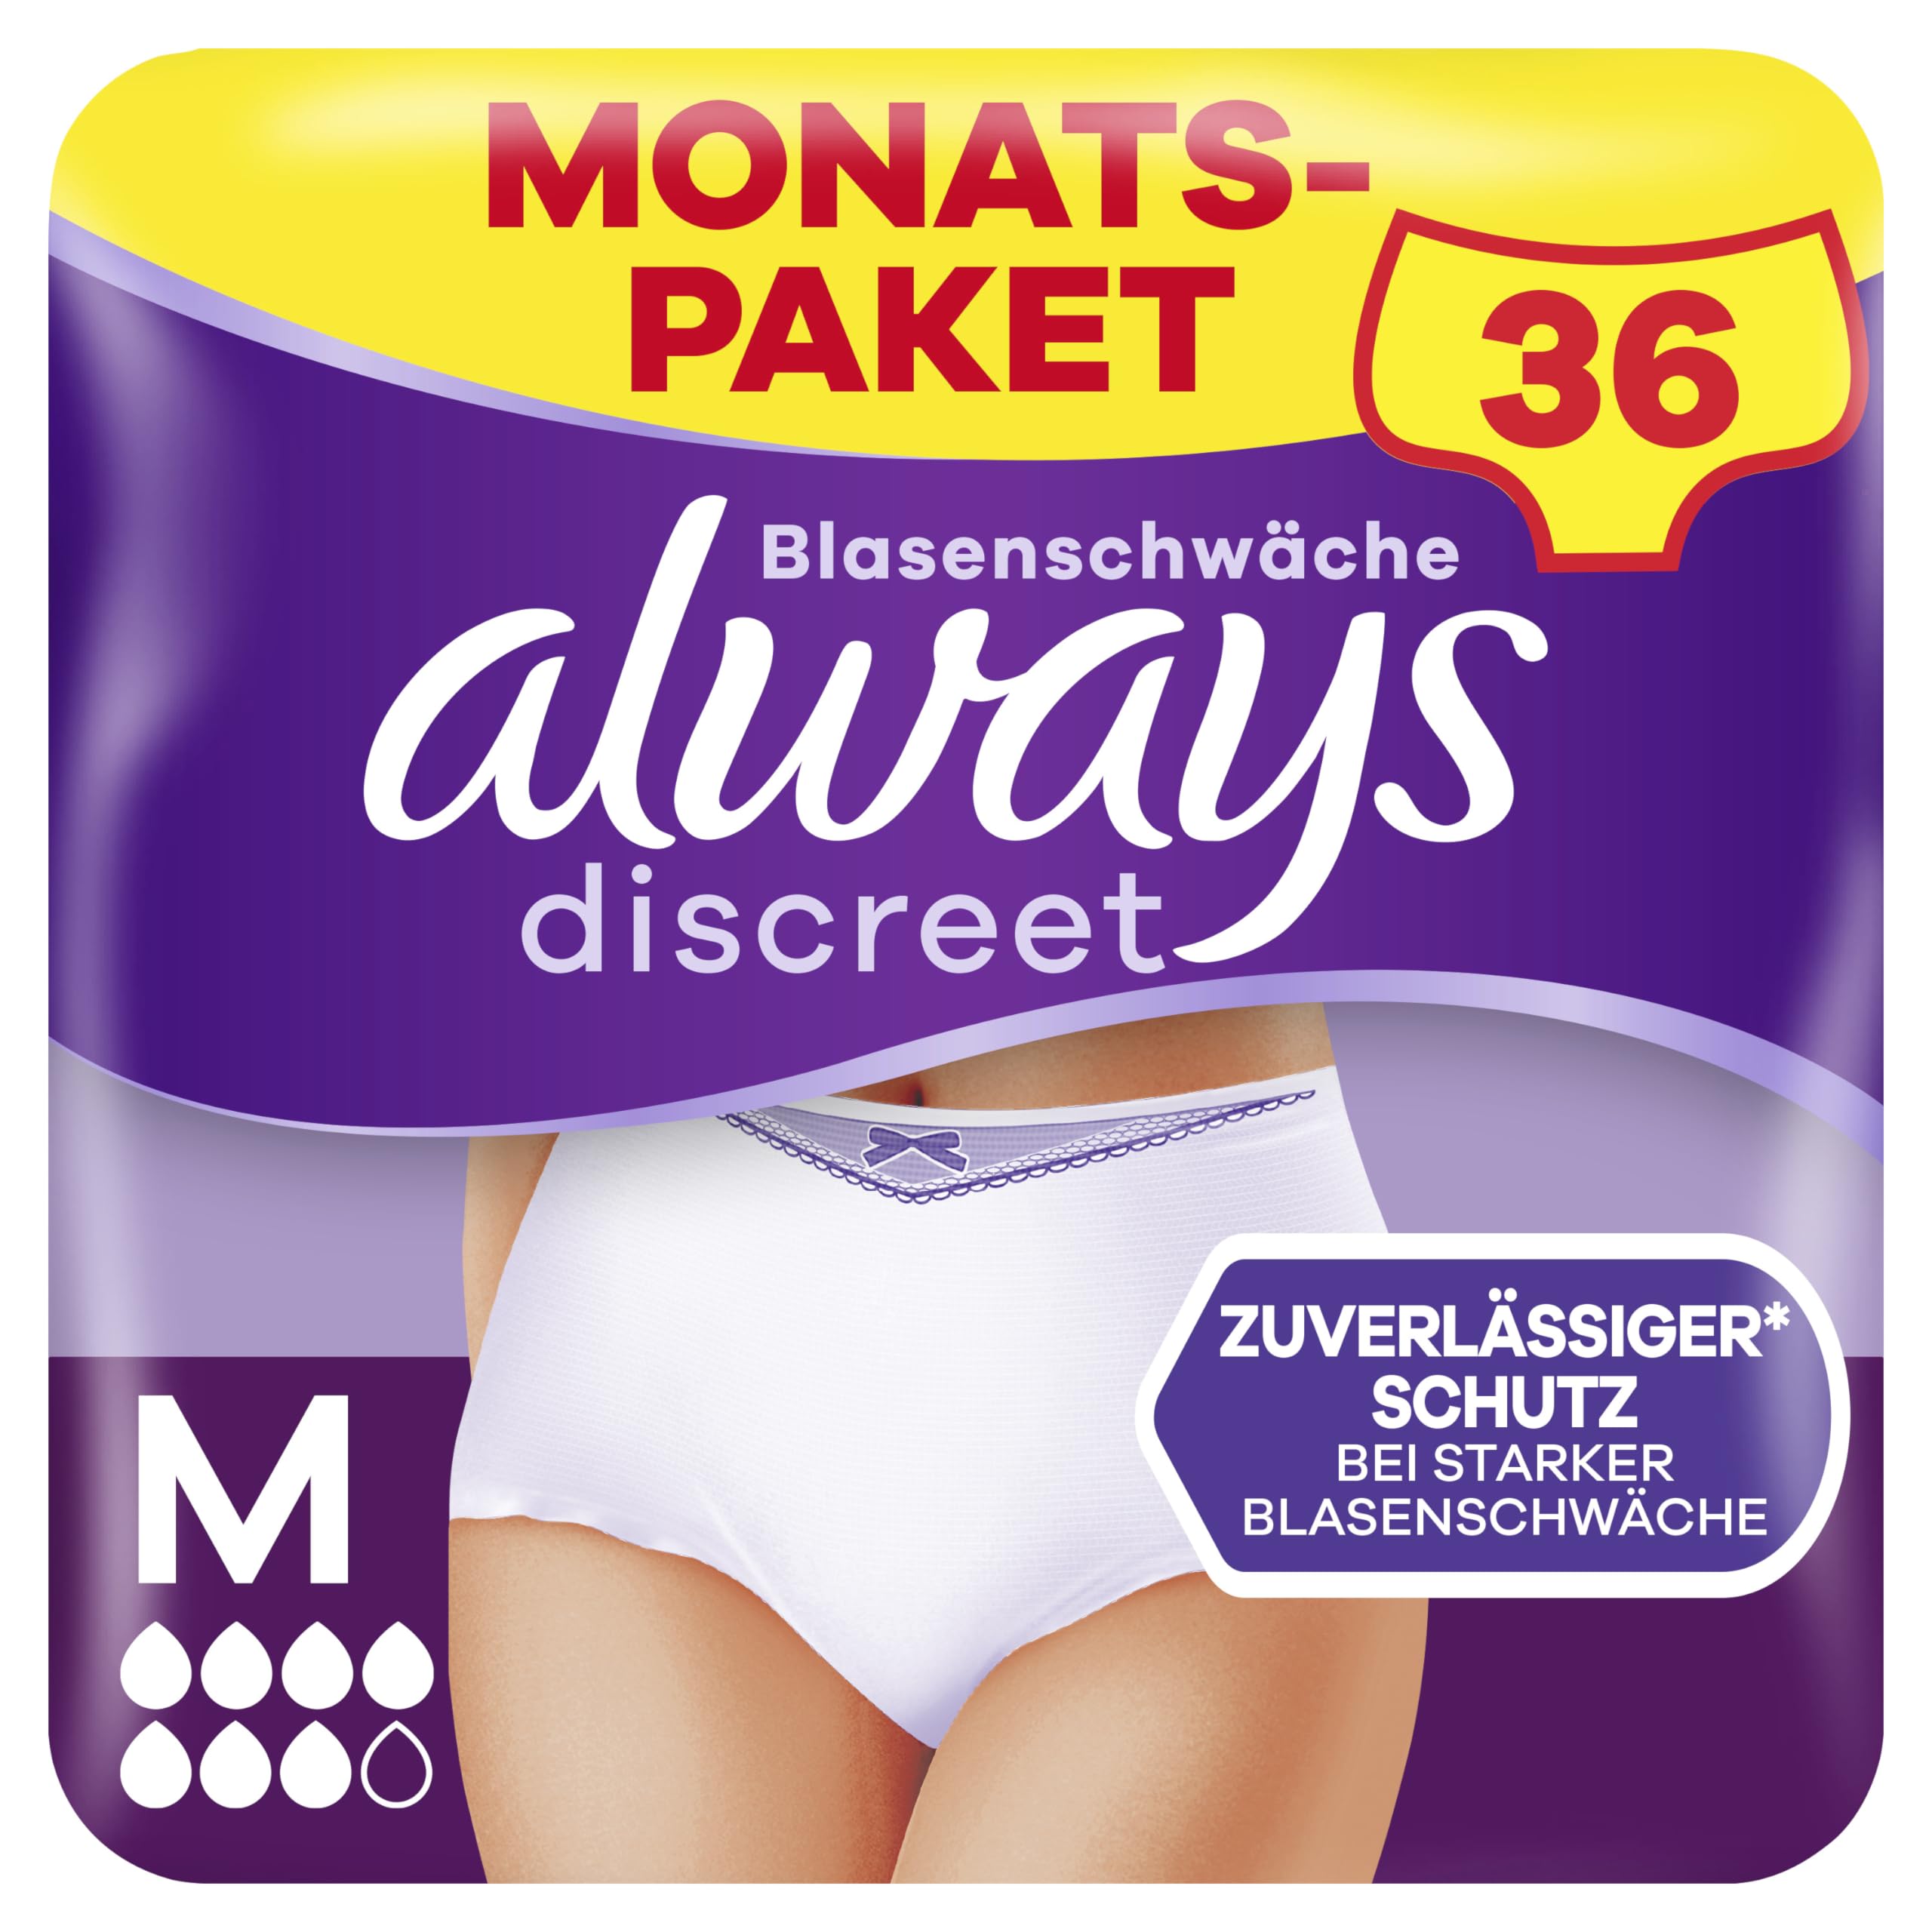 Always Discreet Inkontinenz Pants Gr. M, Plus, 36 Höschen (4 x 9 Stück) für Damen, Monatspaket, schliesst Gerüche und Flüssigkeit sofort ein (Verpackung kann variieren)